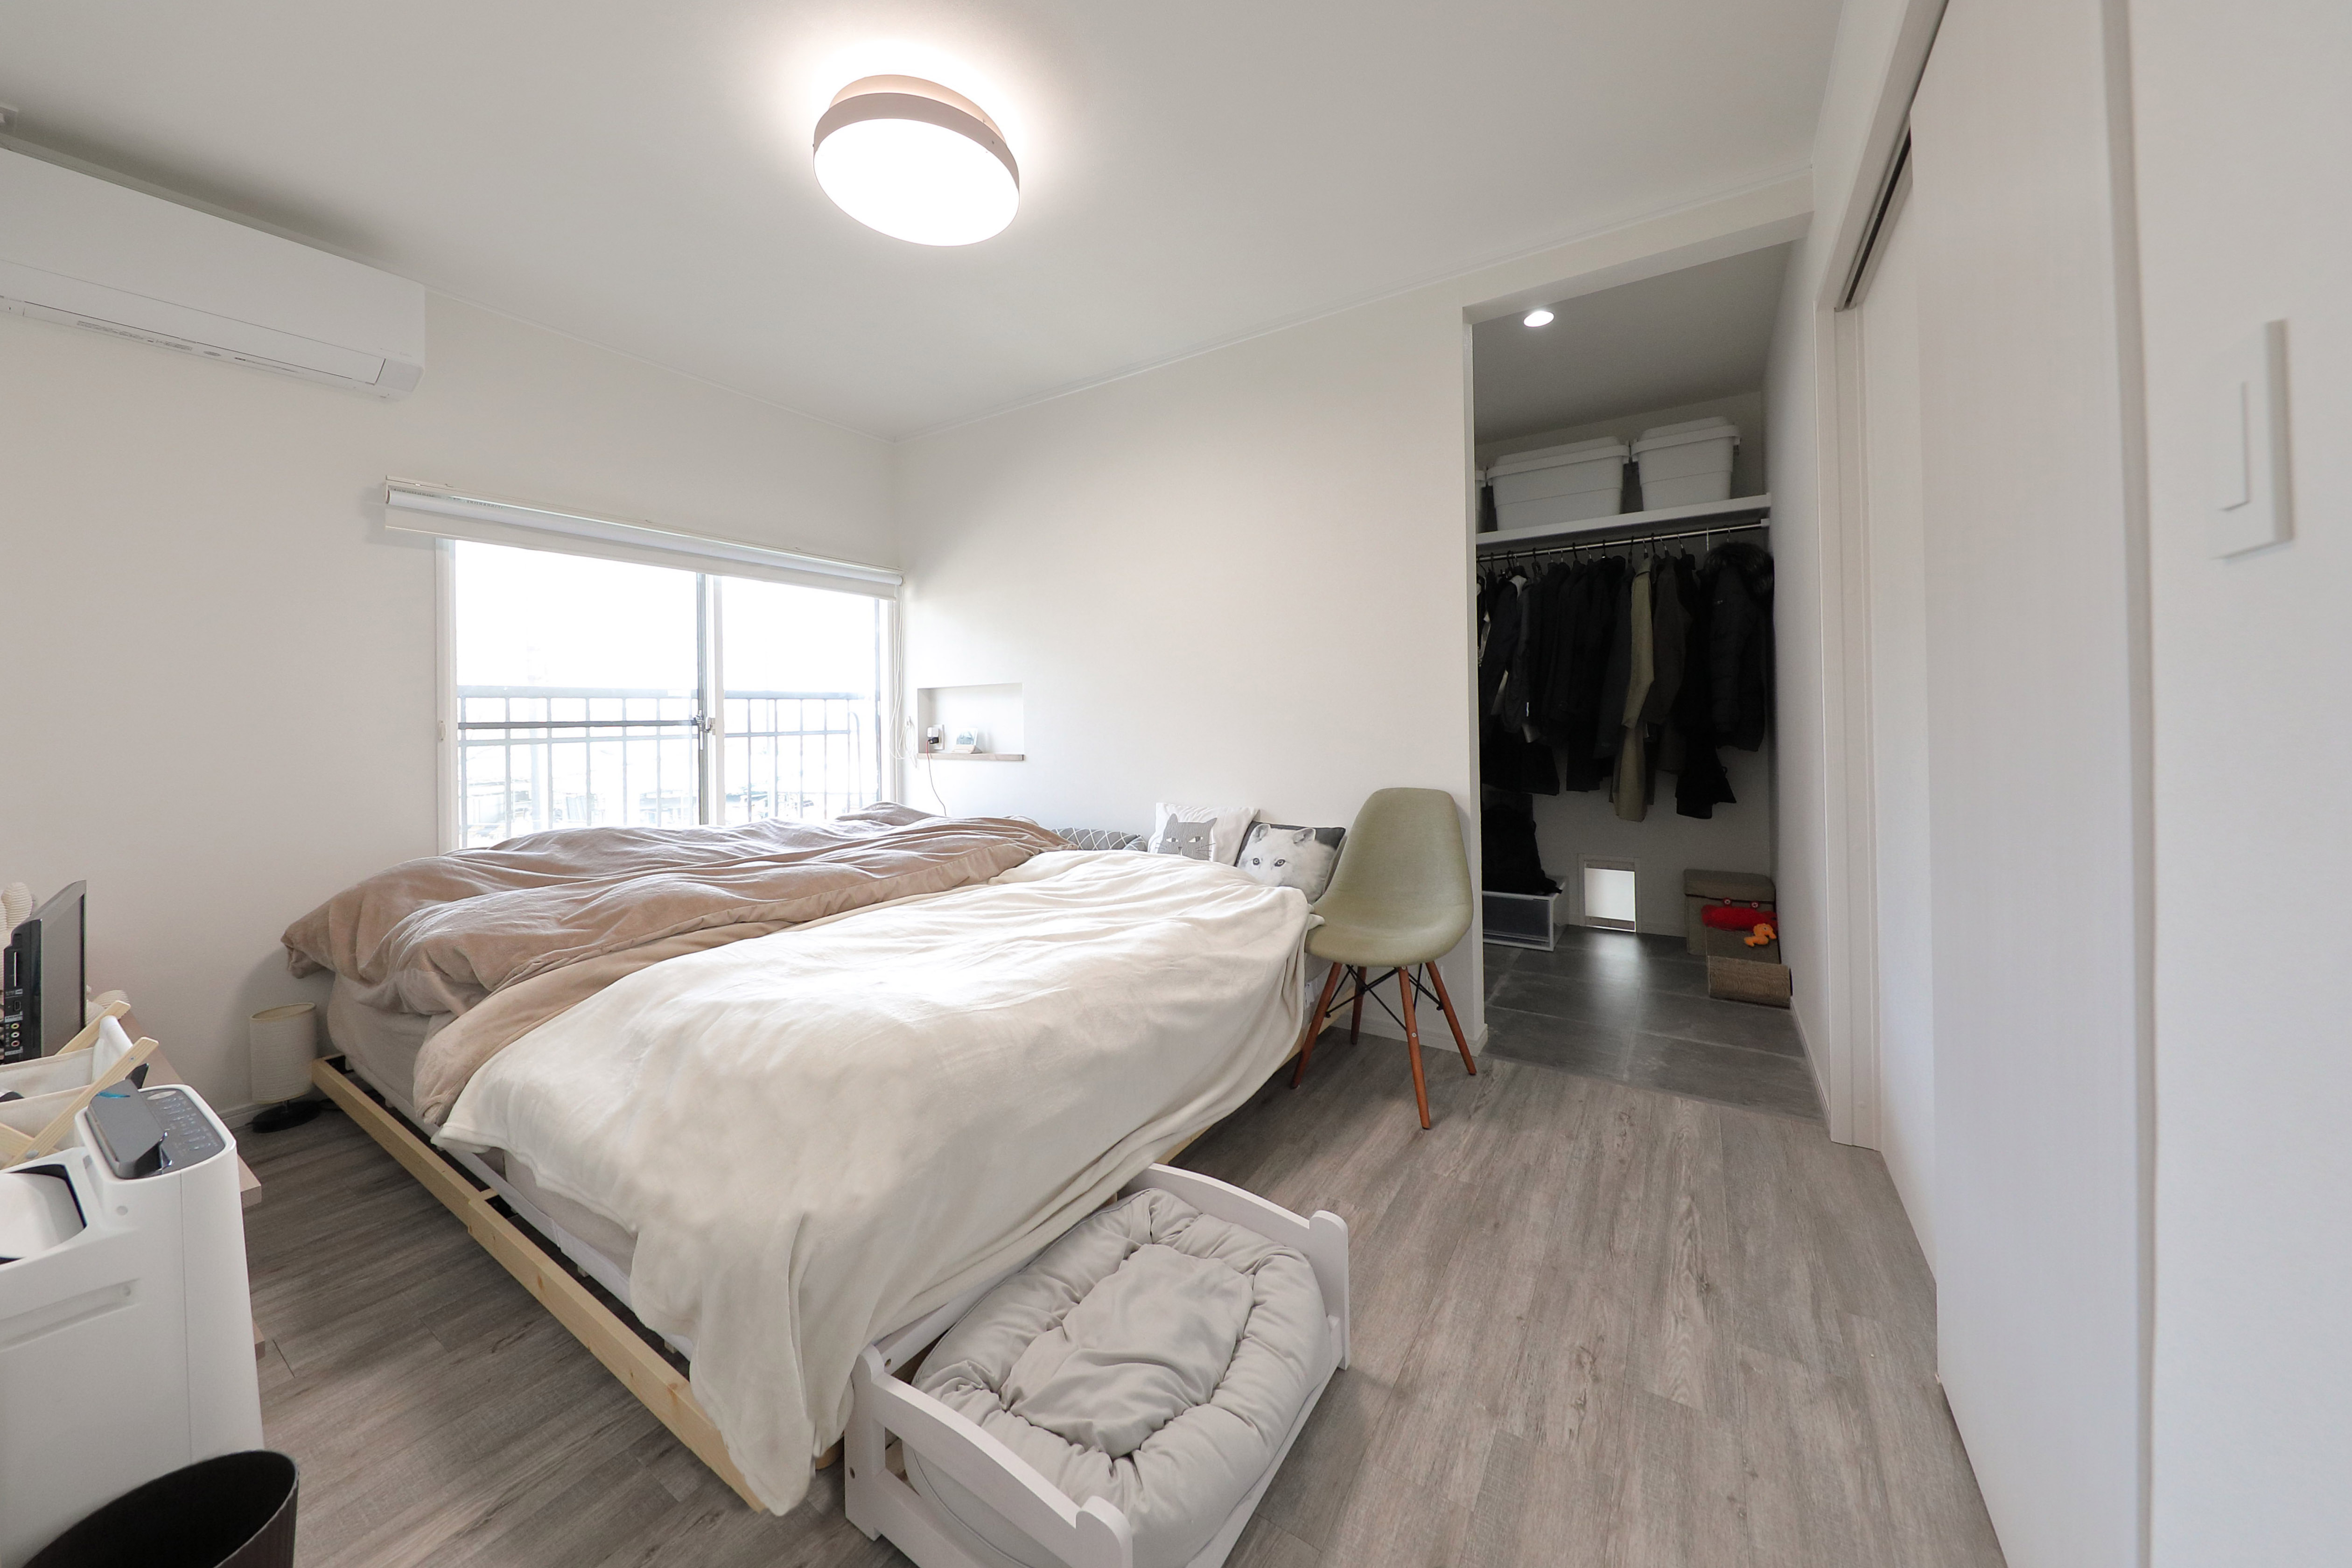 令和の寝室間取りを考える 寝室リノベーションで快適な睡眠を 東京実例紹介 リノベーションのshuken Re マンション 住宅 中古物件をリフォームやリノベで住みやすくデザインし施工します